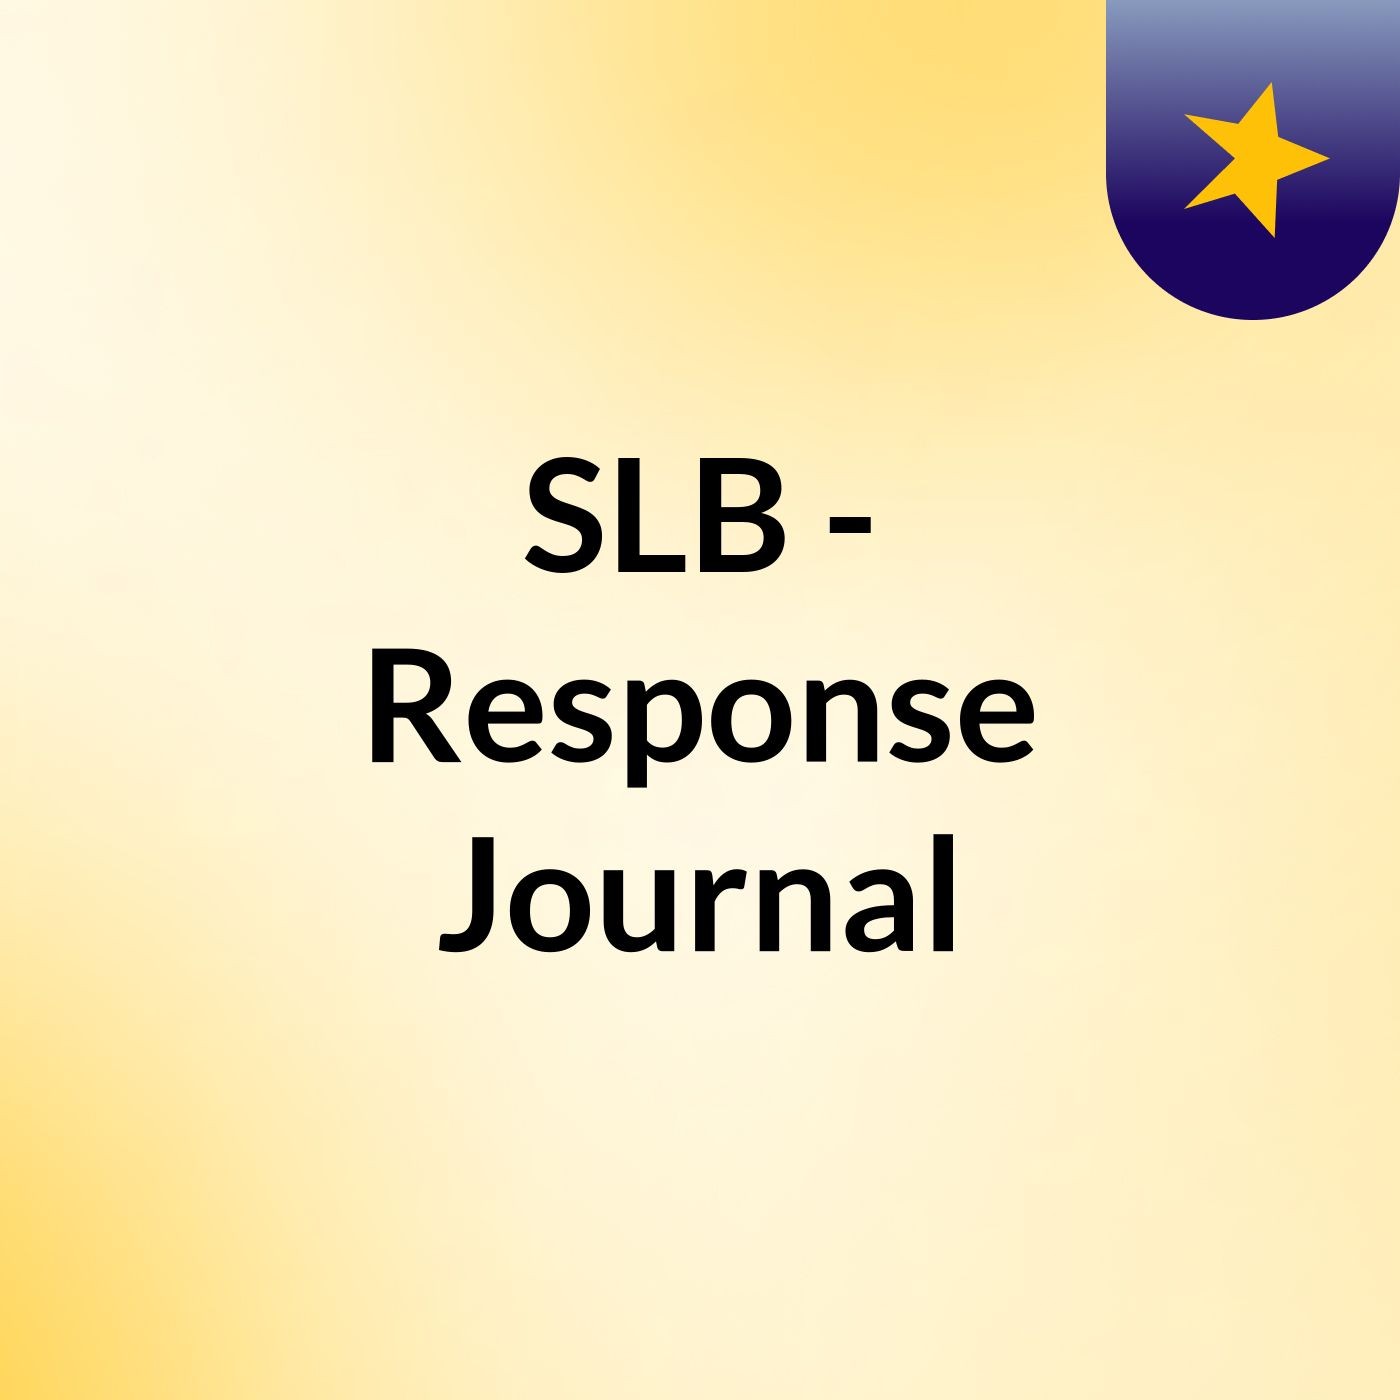 Episode 6 - SLB - Response Journal